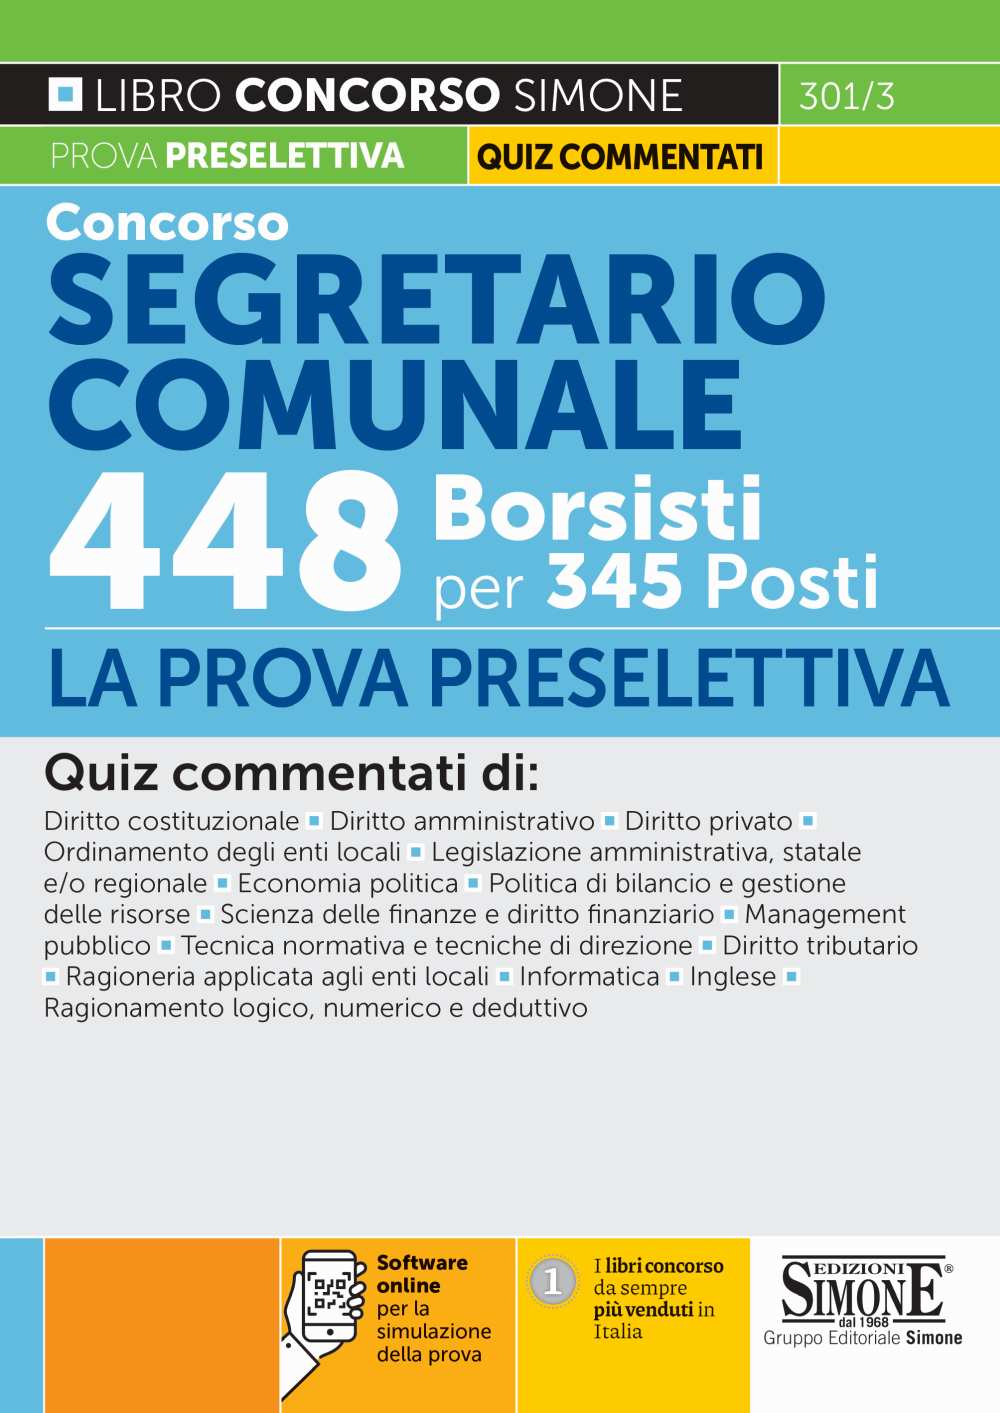 Concorso Segretario Comunale 448 Borsisti per 345 Posti - La Prova Preselettiva - 301/3